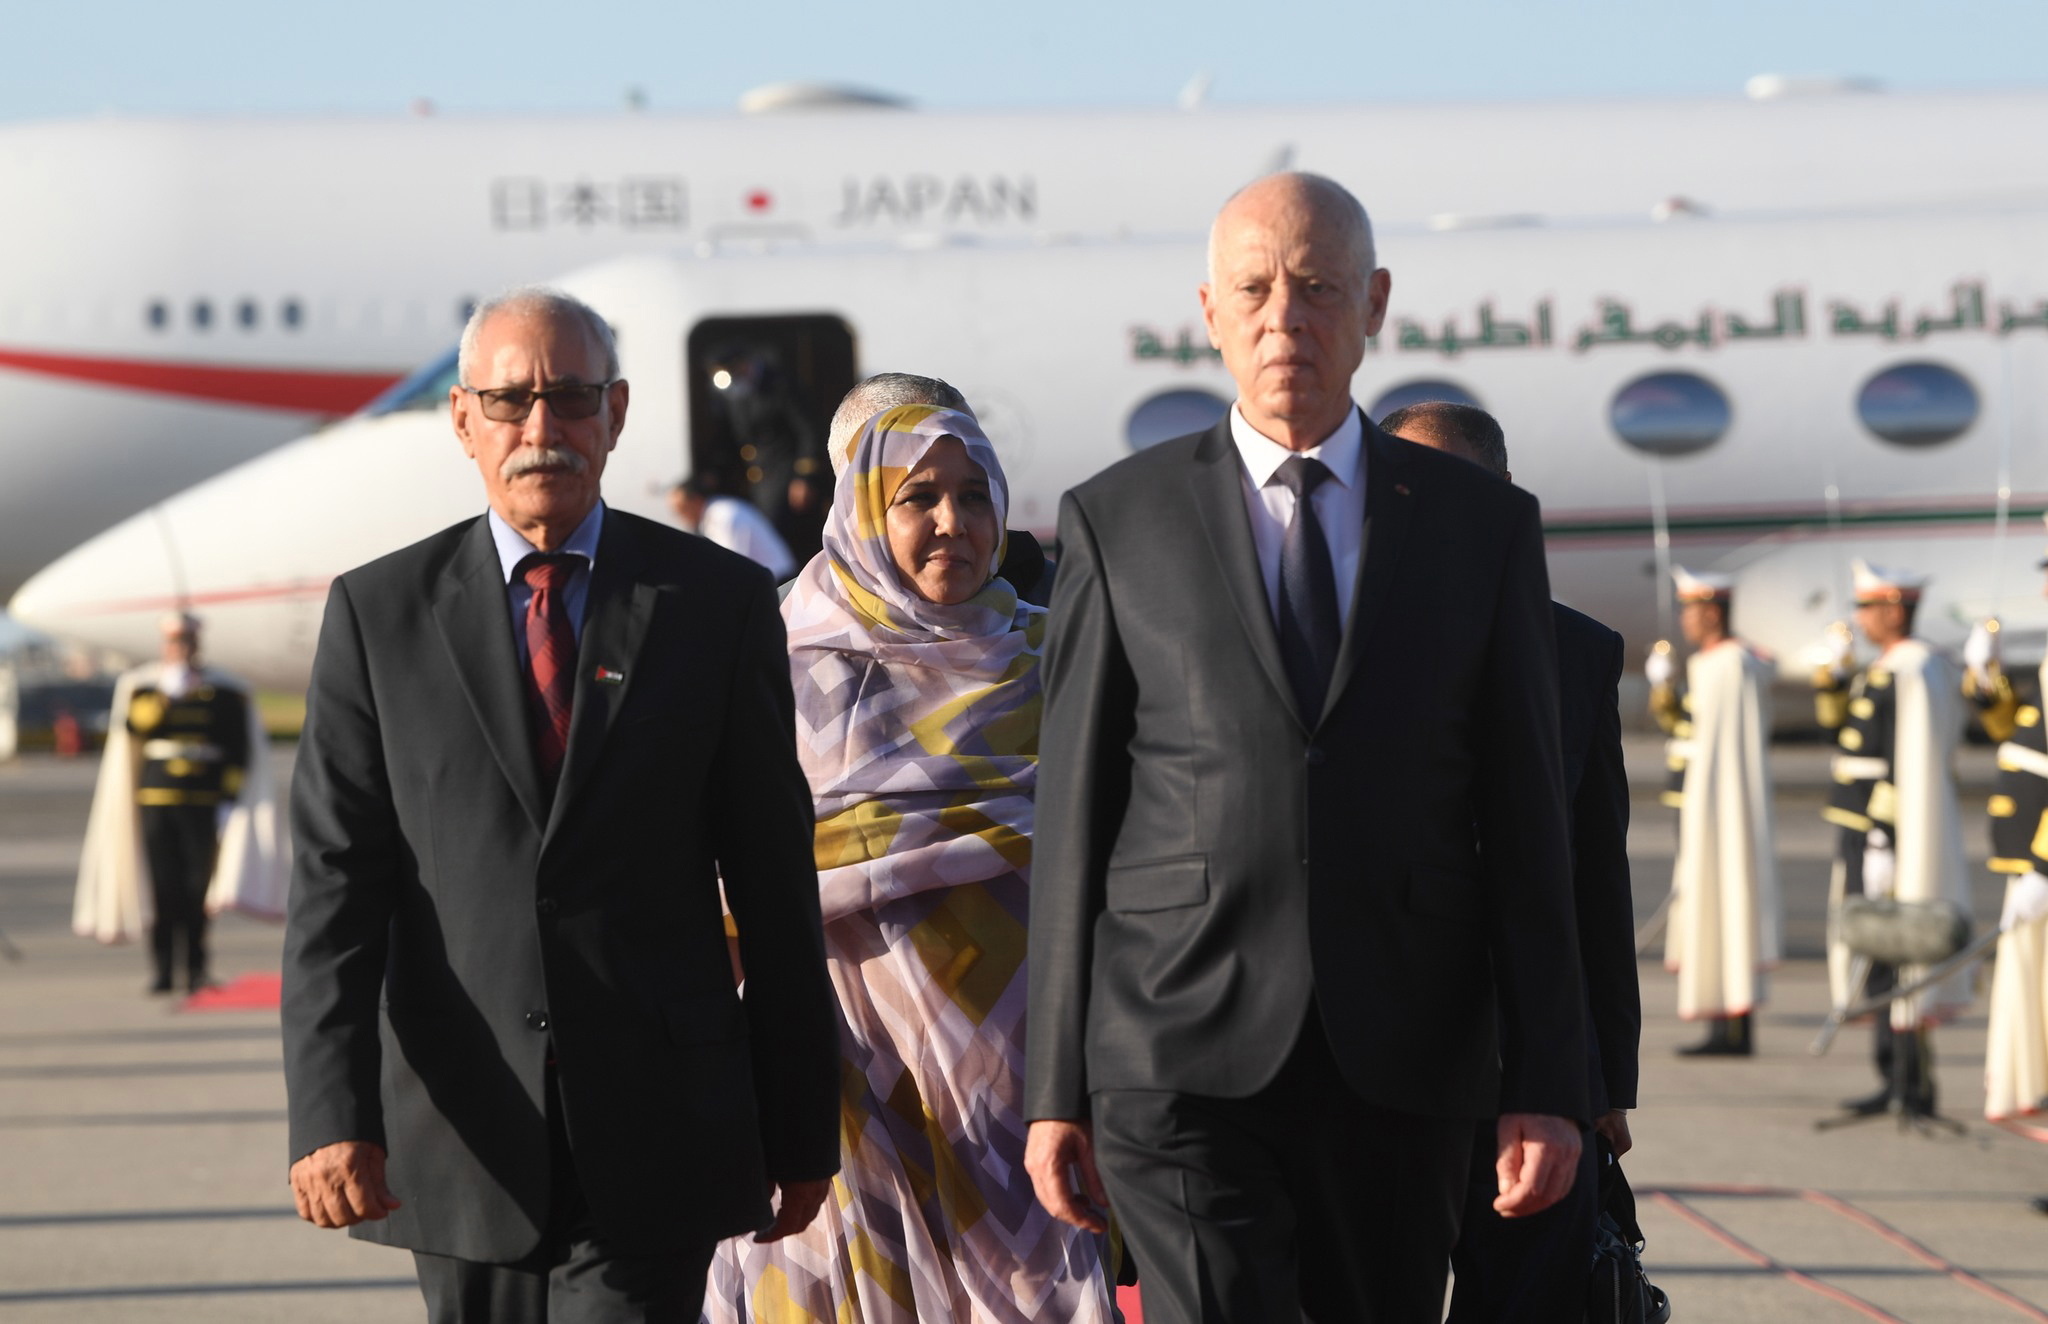 El presidente de Tnez, a la derecha, recibe al lder del Frente Polisario